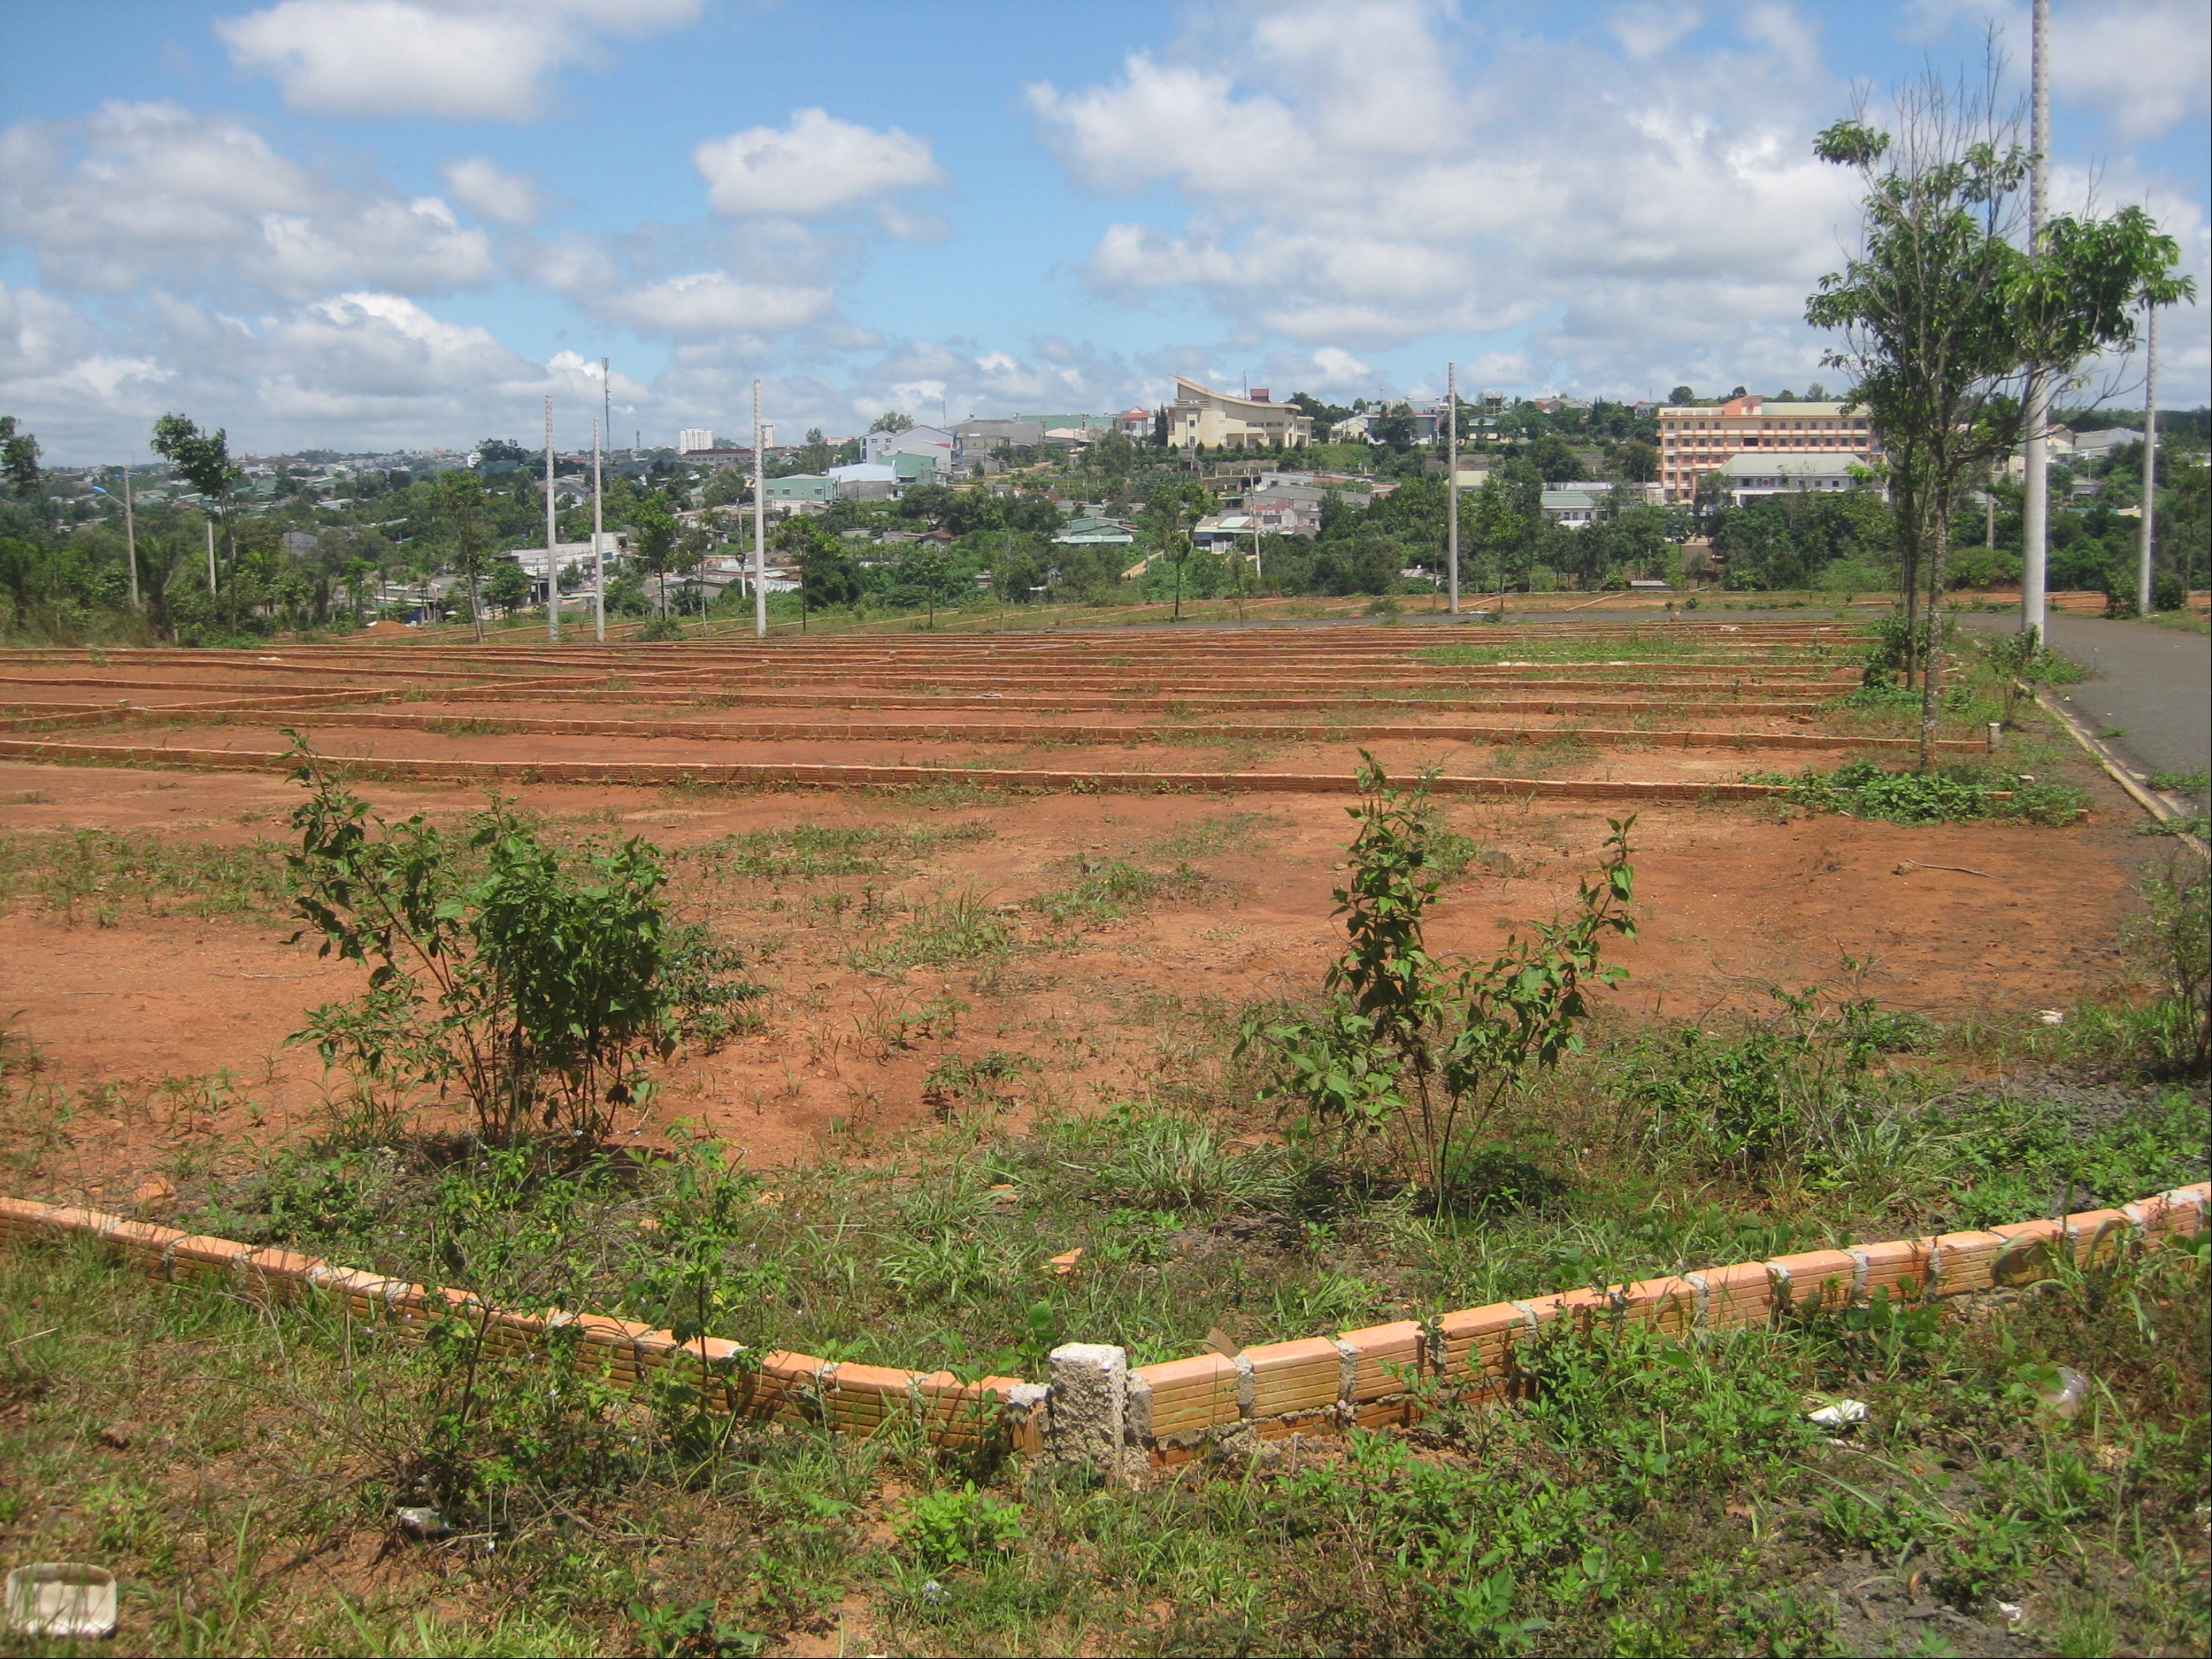 Đấu giá quyền sử dụng đất tại huyện Chư Sê, Gia Lai